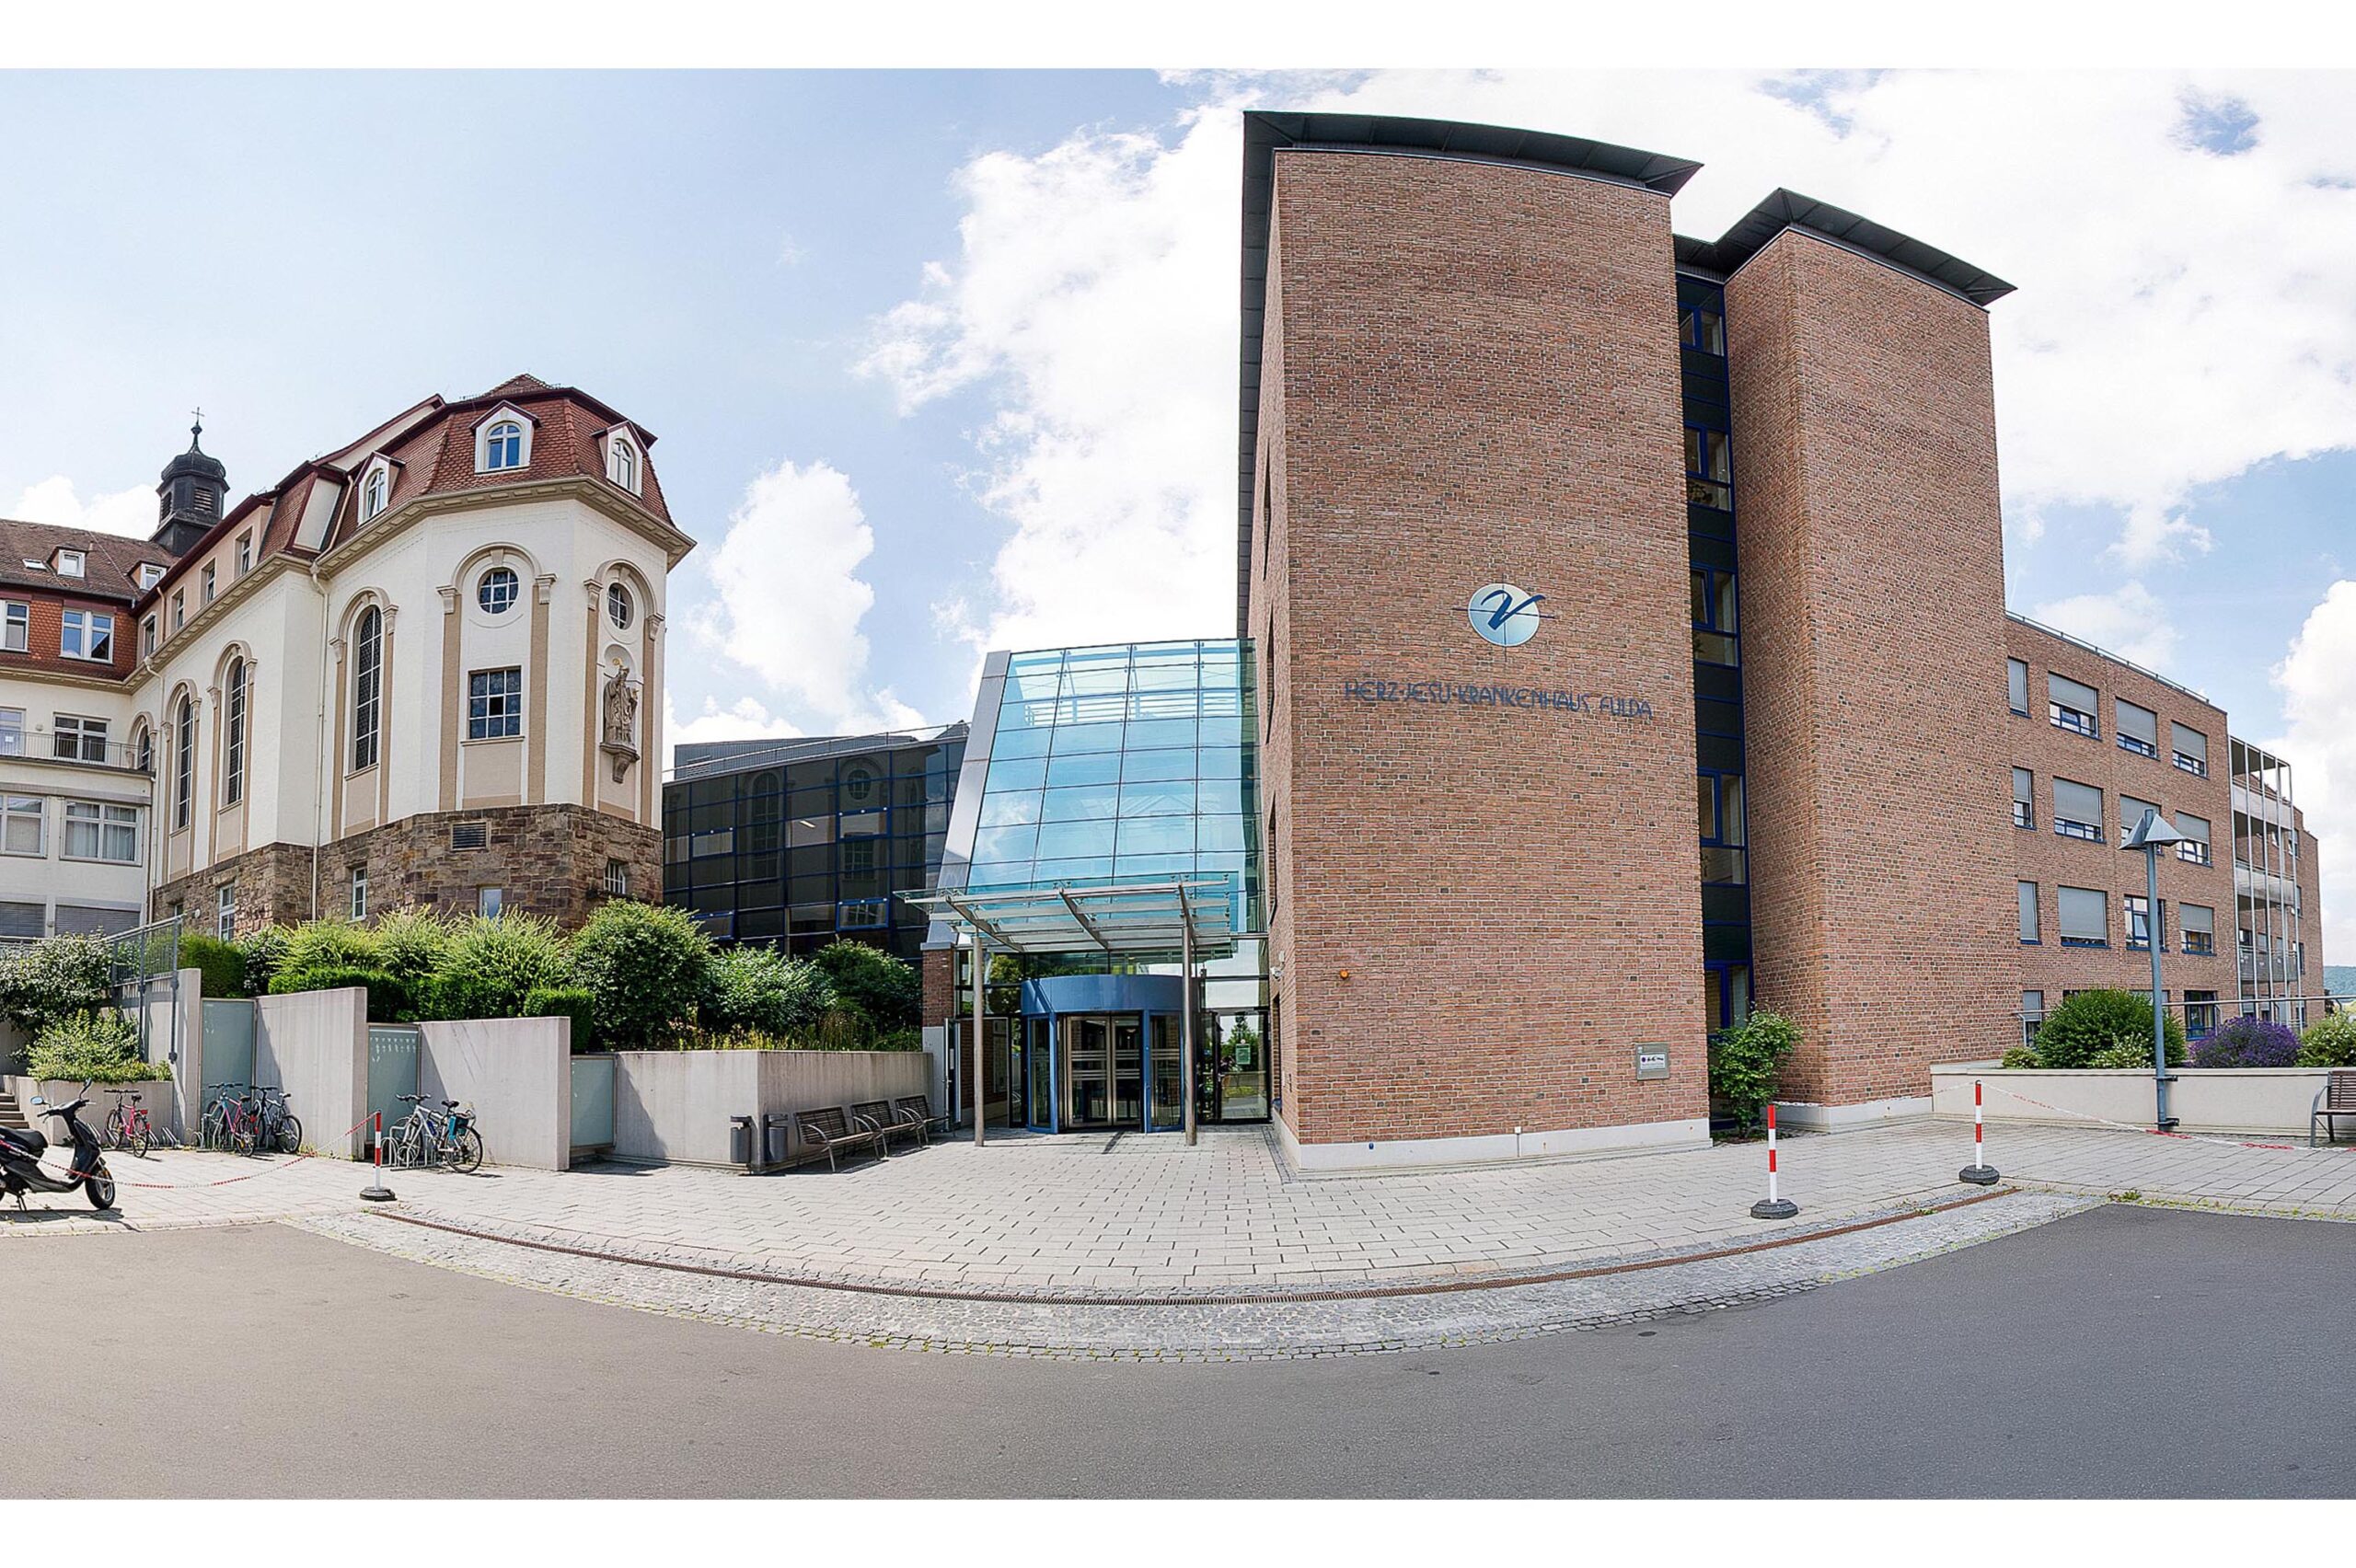 Herz-Jesu-Krankenhaus Fulda eines der besten Krankenhäuser Deutschlands (laut F.A.Z.-Studie)